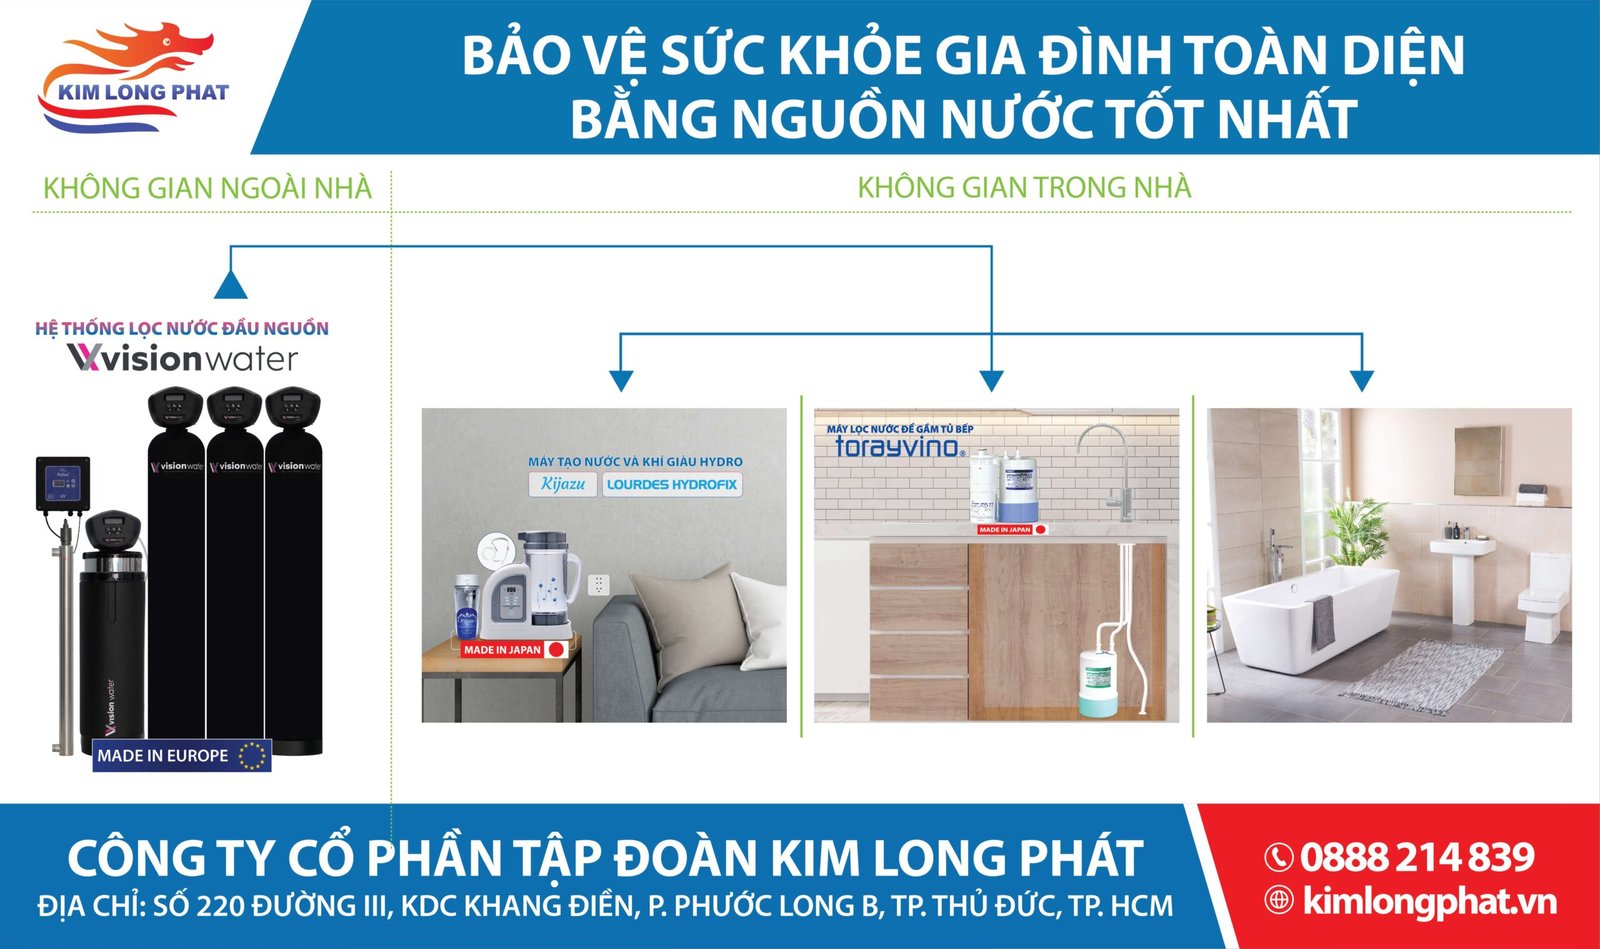 Kim Long Phát mang đến các sản phẩm tạo nguồn nước tốt cho cho mọi gia đình 